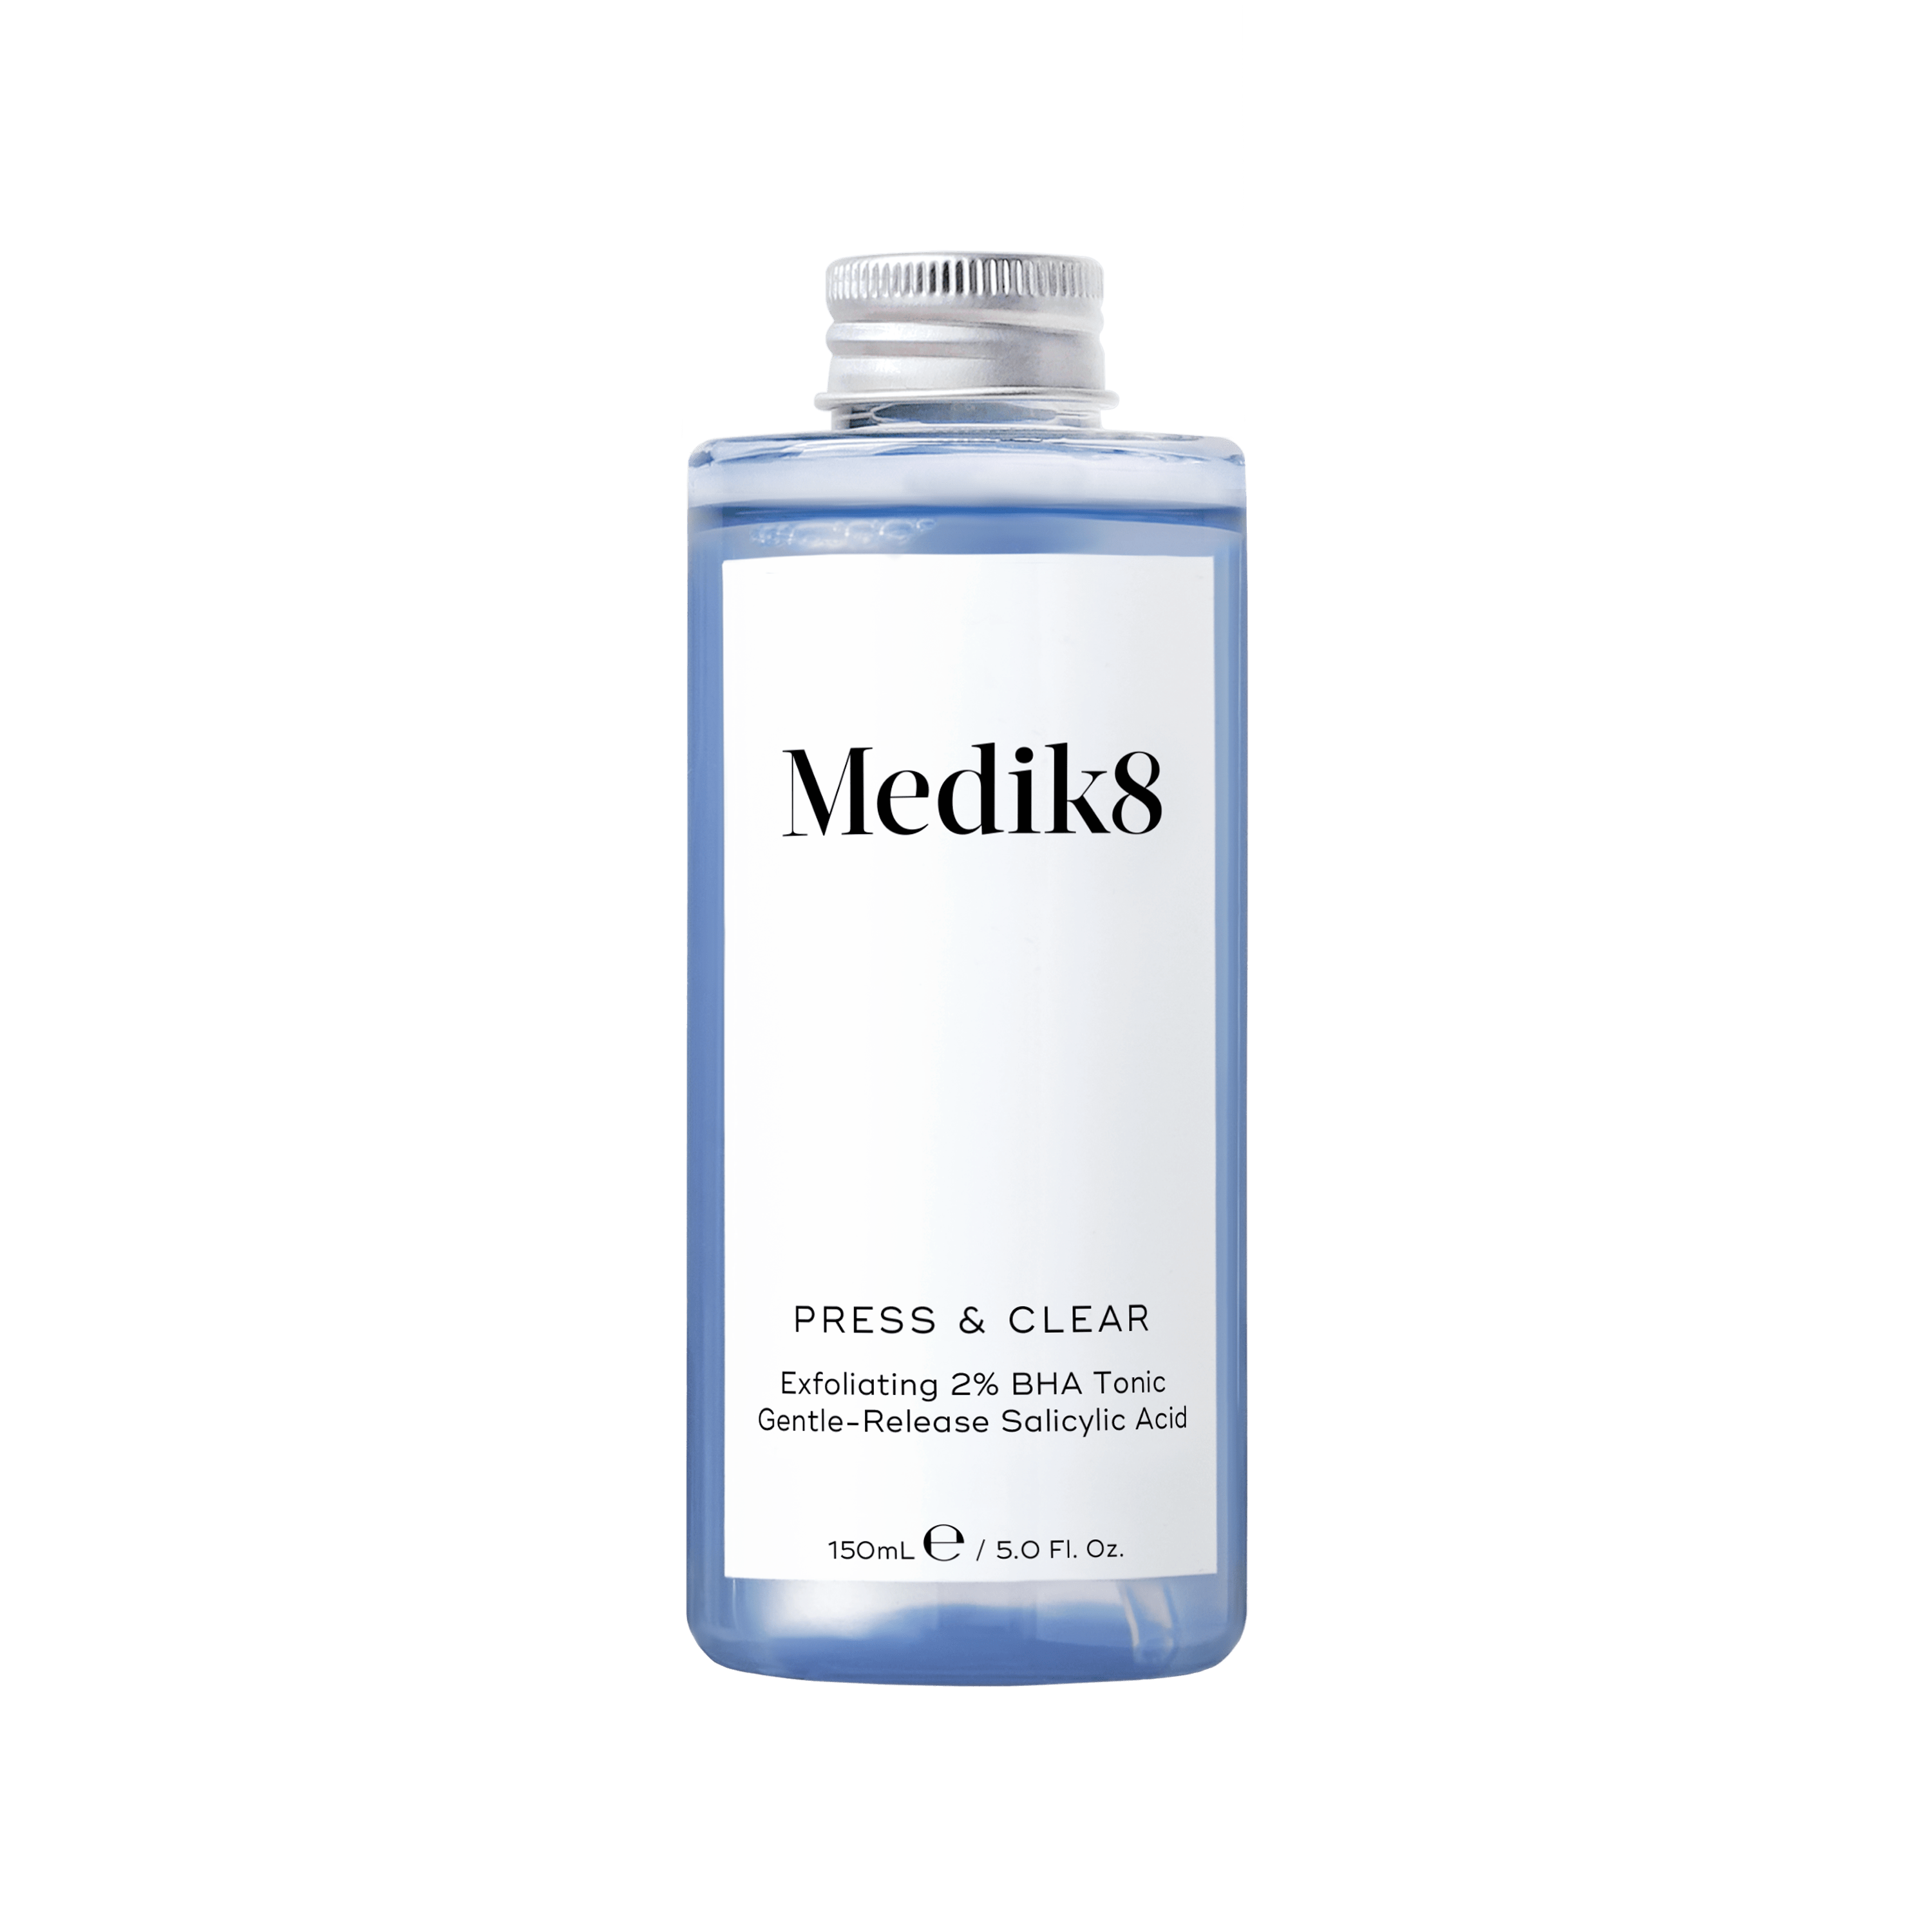 Medik8 Press & Clear Exfoliating BHA Tonic Refill 150ml